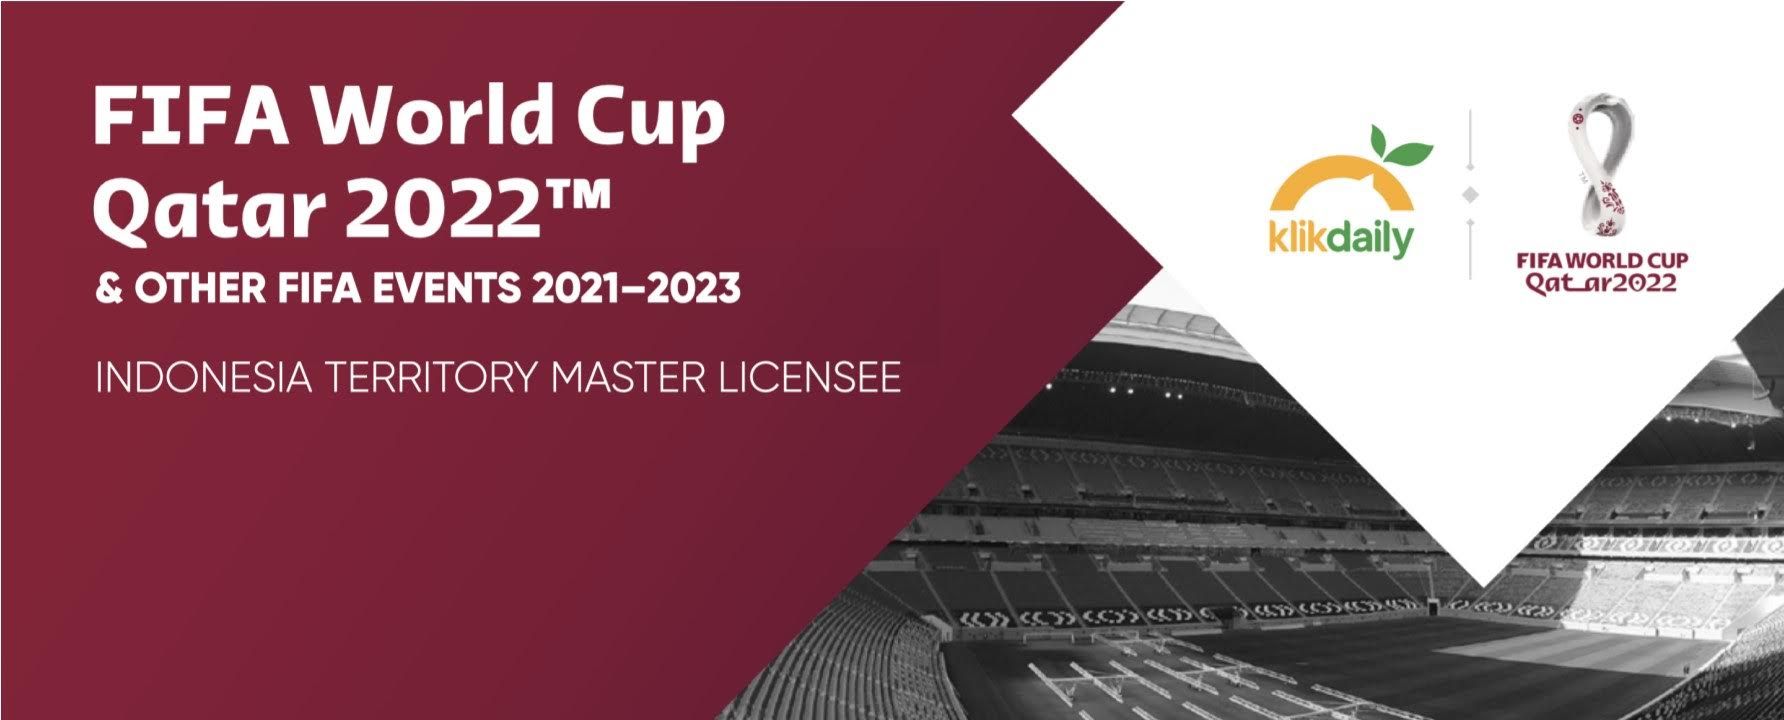 Klikdaily resmi memegang lisensi untuk Piala Dunia 2022 dan Piala Dunia U-20 2023.